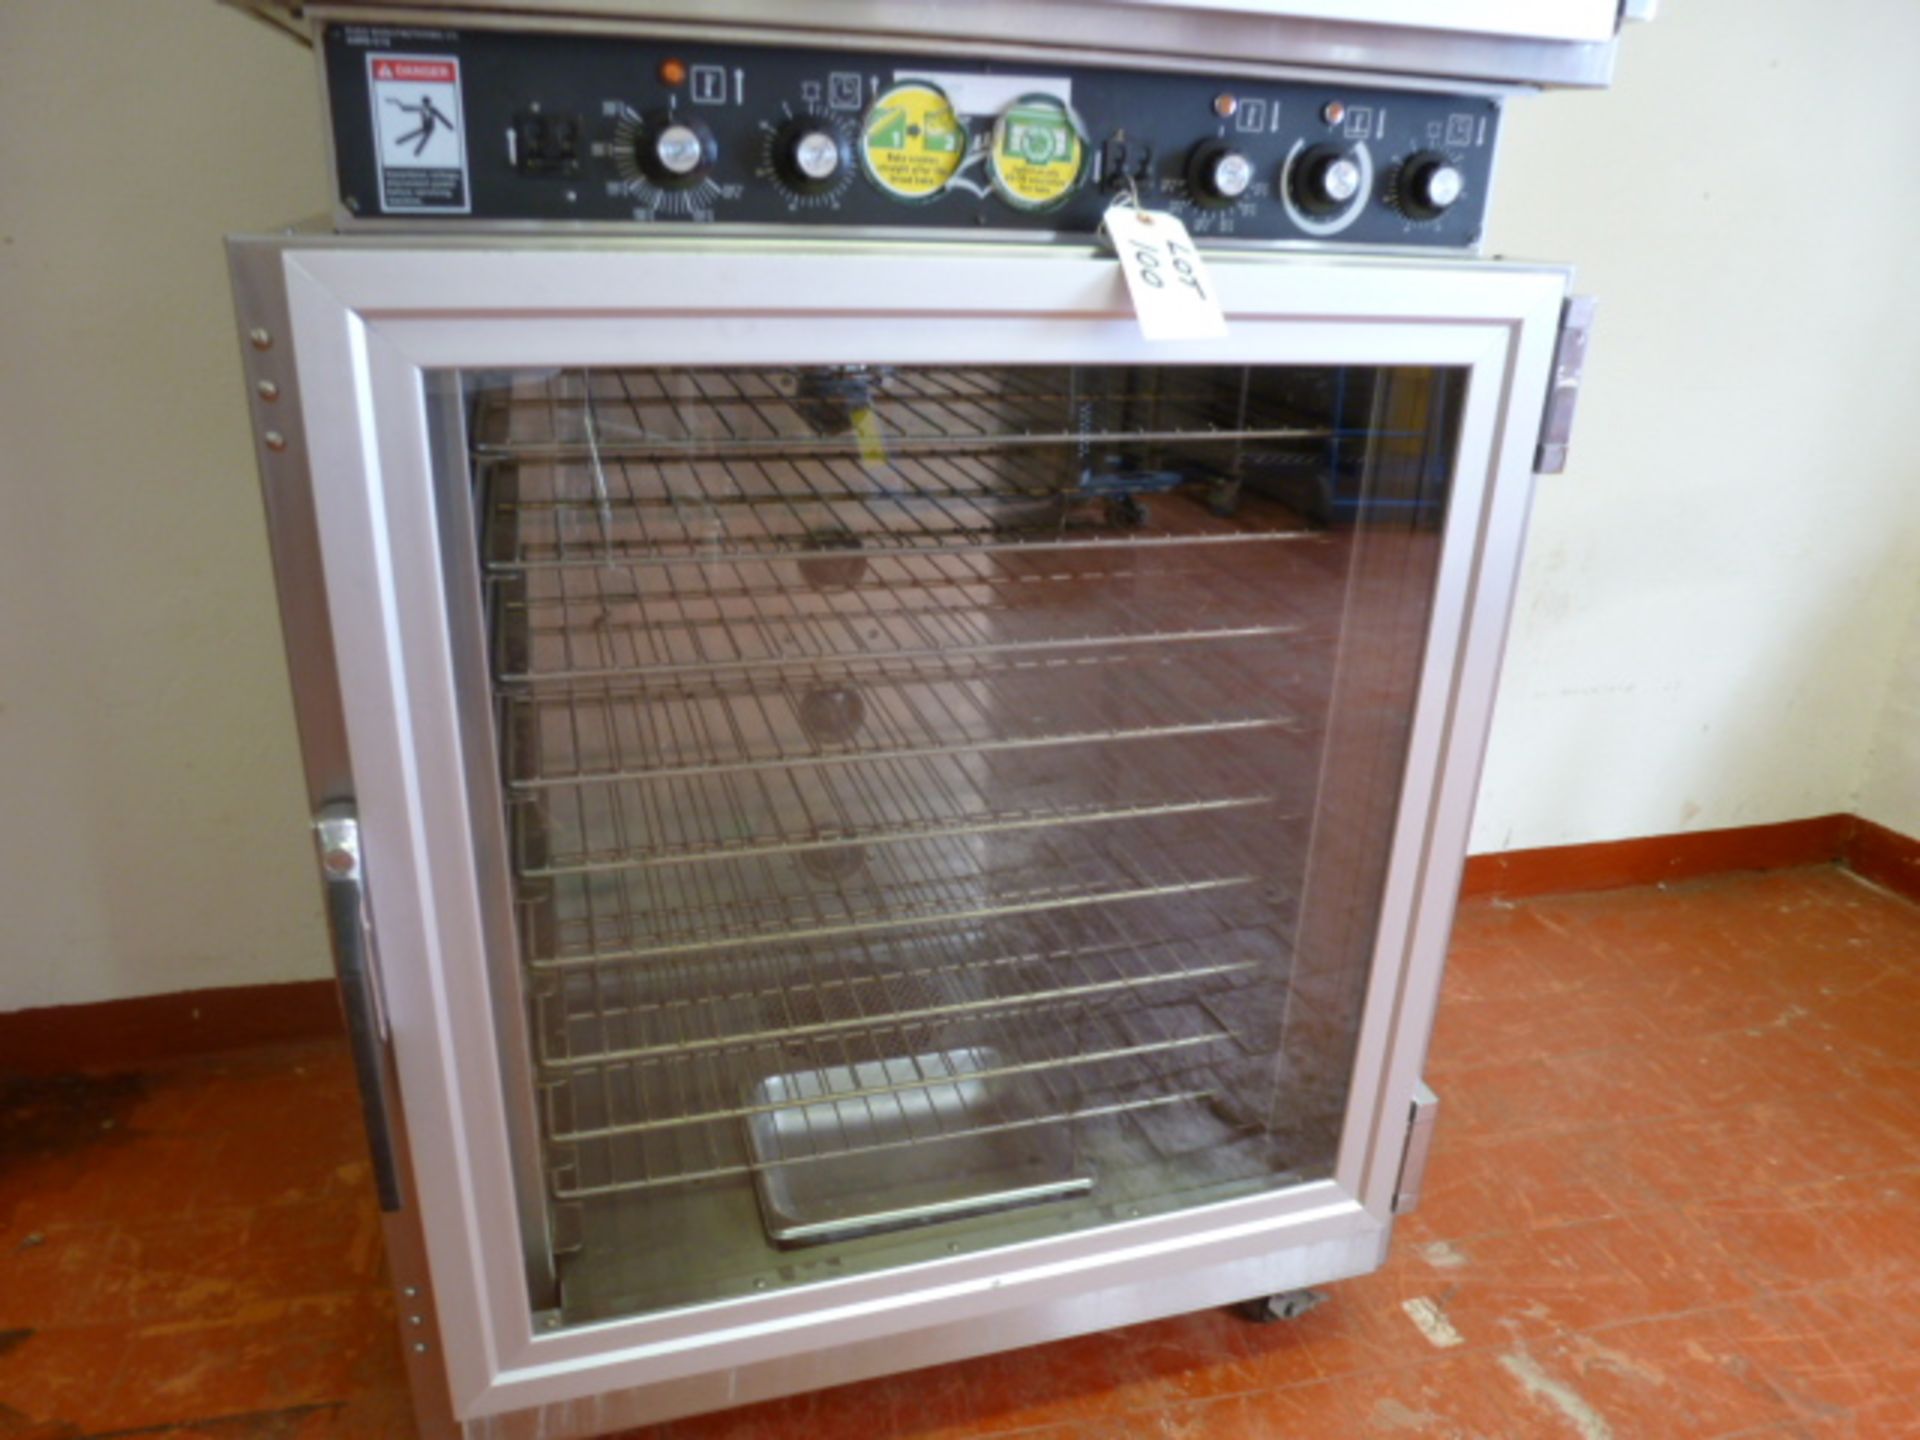 Duke Stainless Steel Commercial 3 Rack Bakery Oven, Over 9 Rack Proover. Model AHPO-618, S/N 30- - Image 3 of 9